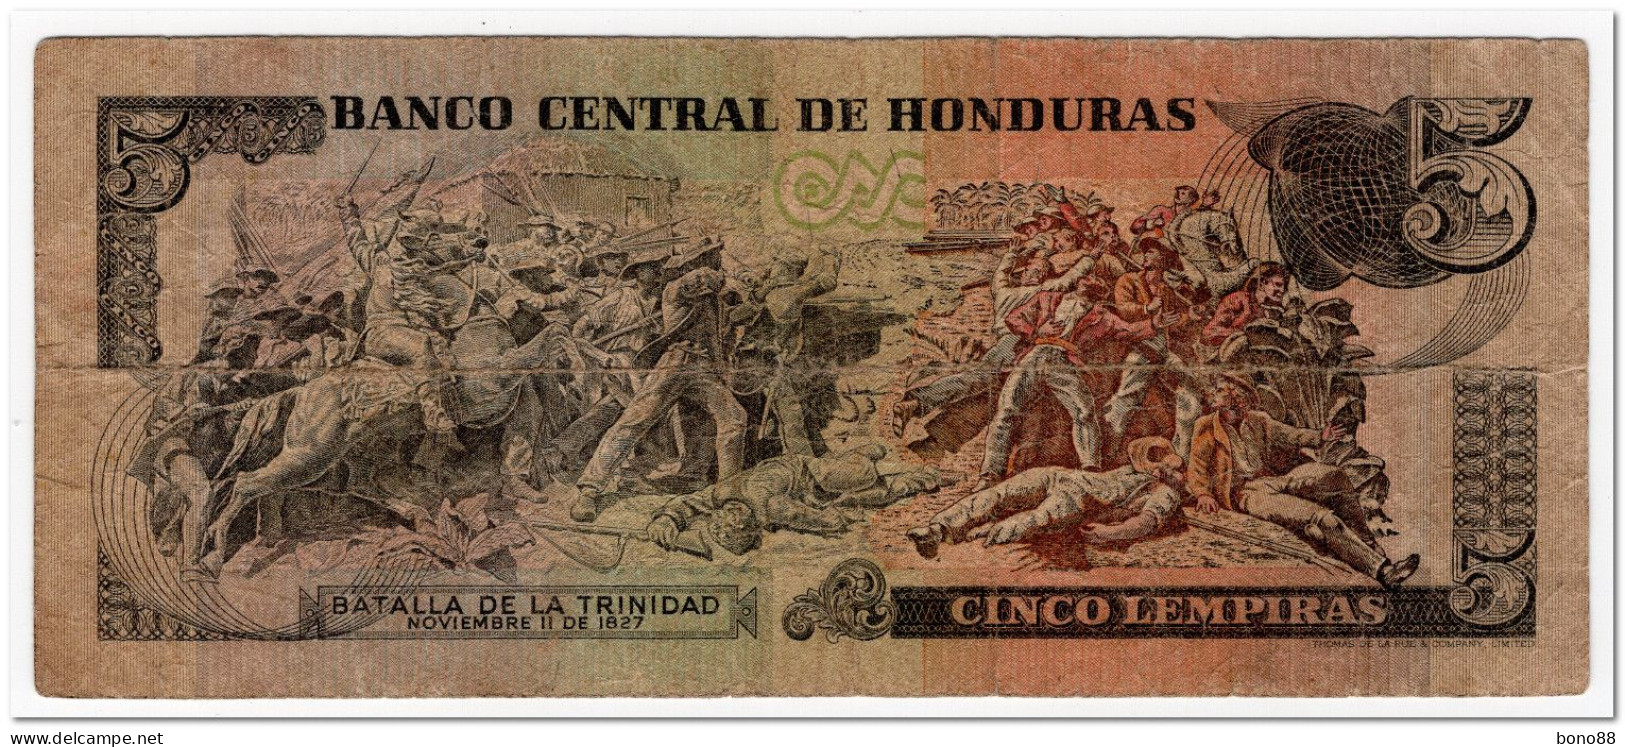 HONDURAS,5 LEMPIRAS,1978,P.63a,CIRCULATED - Honduras